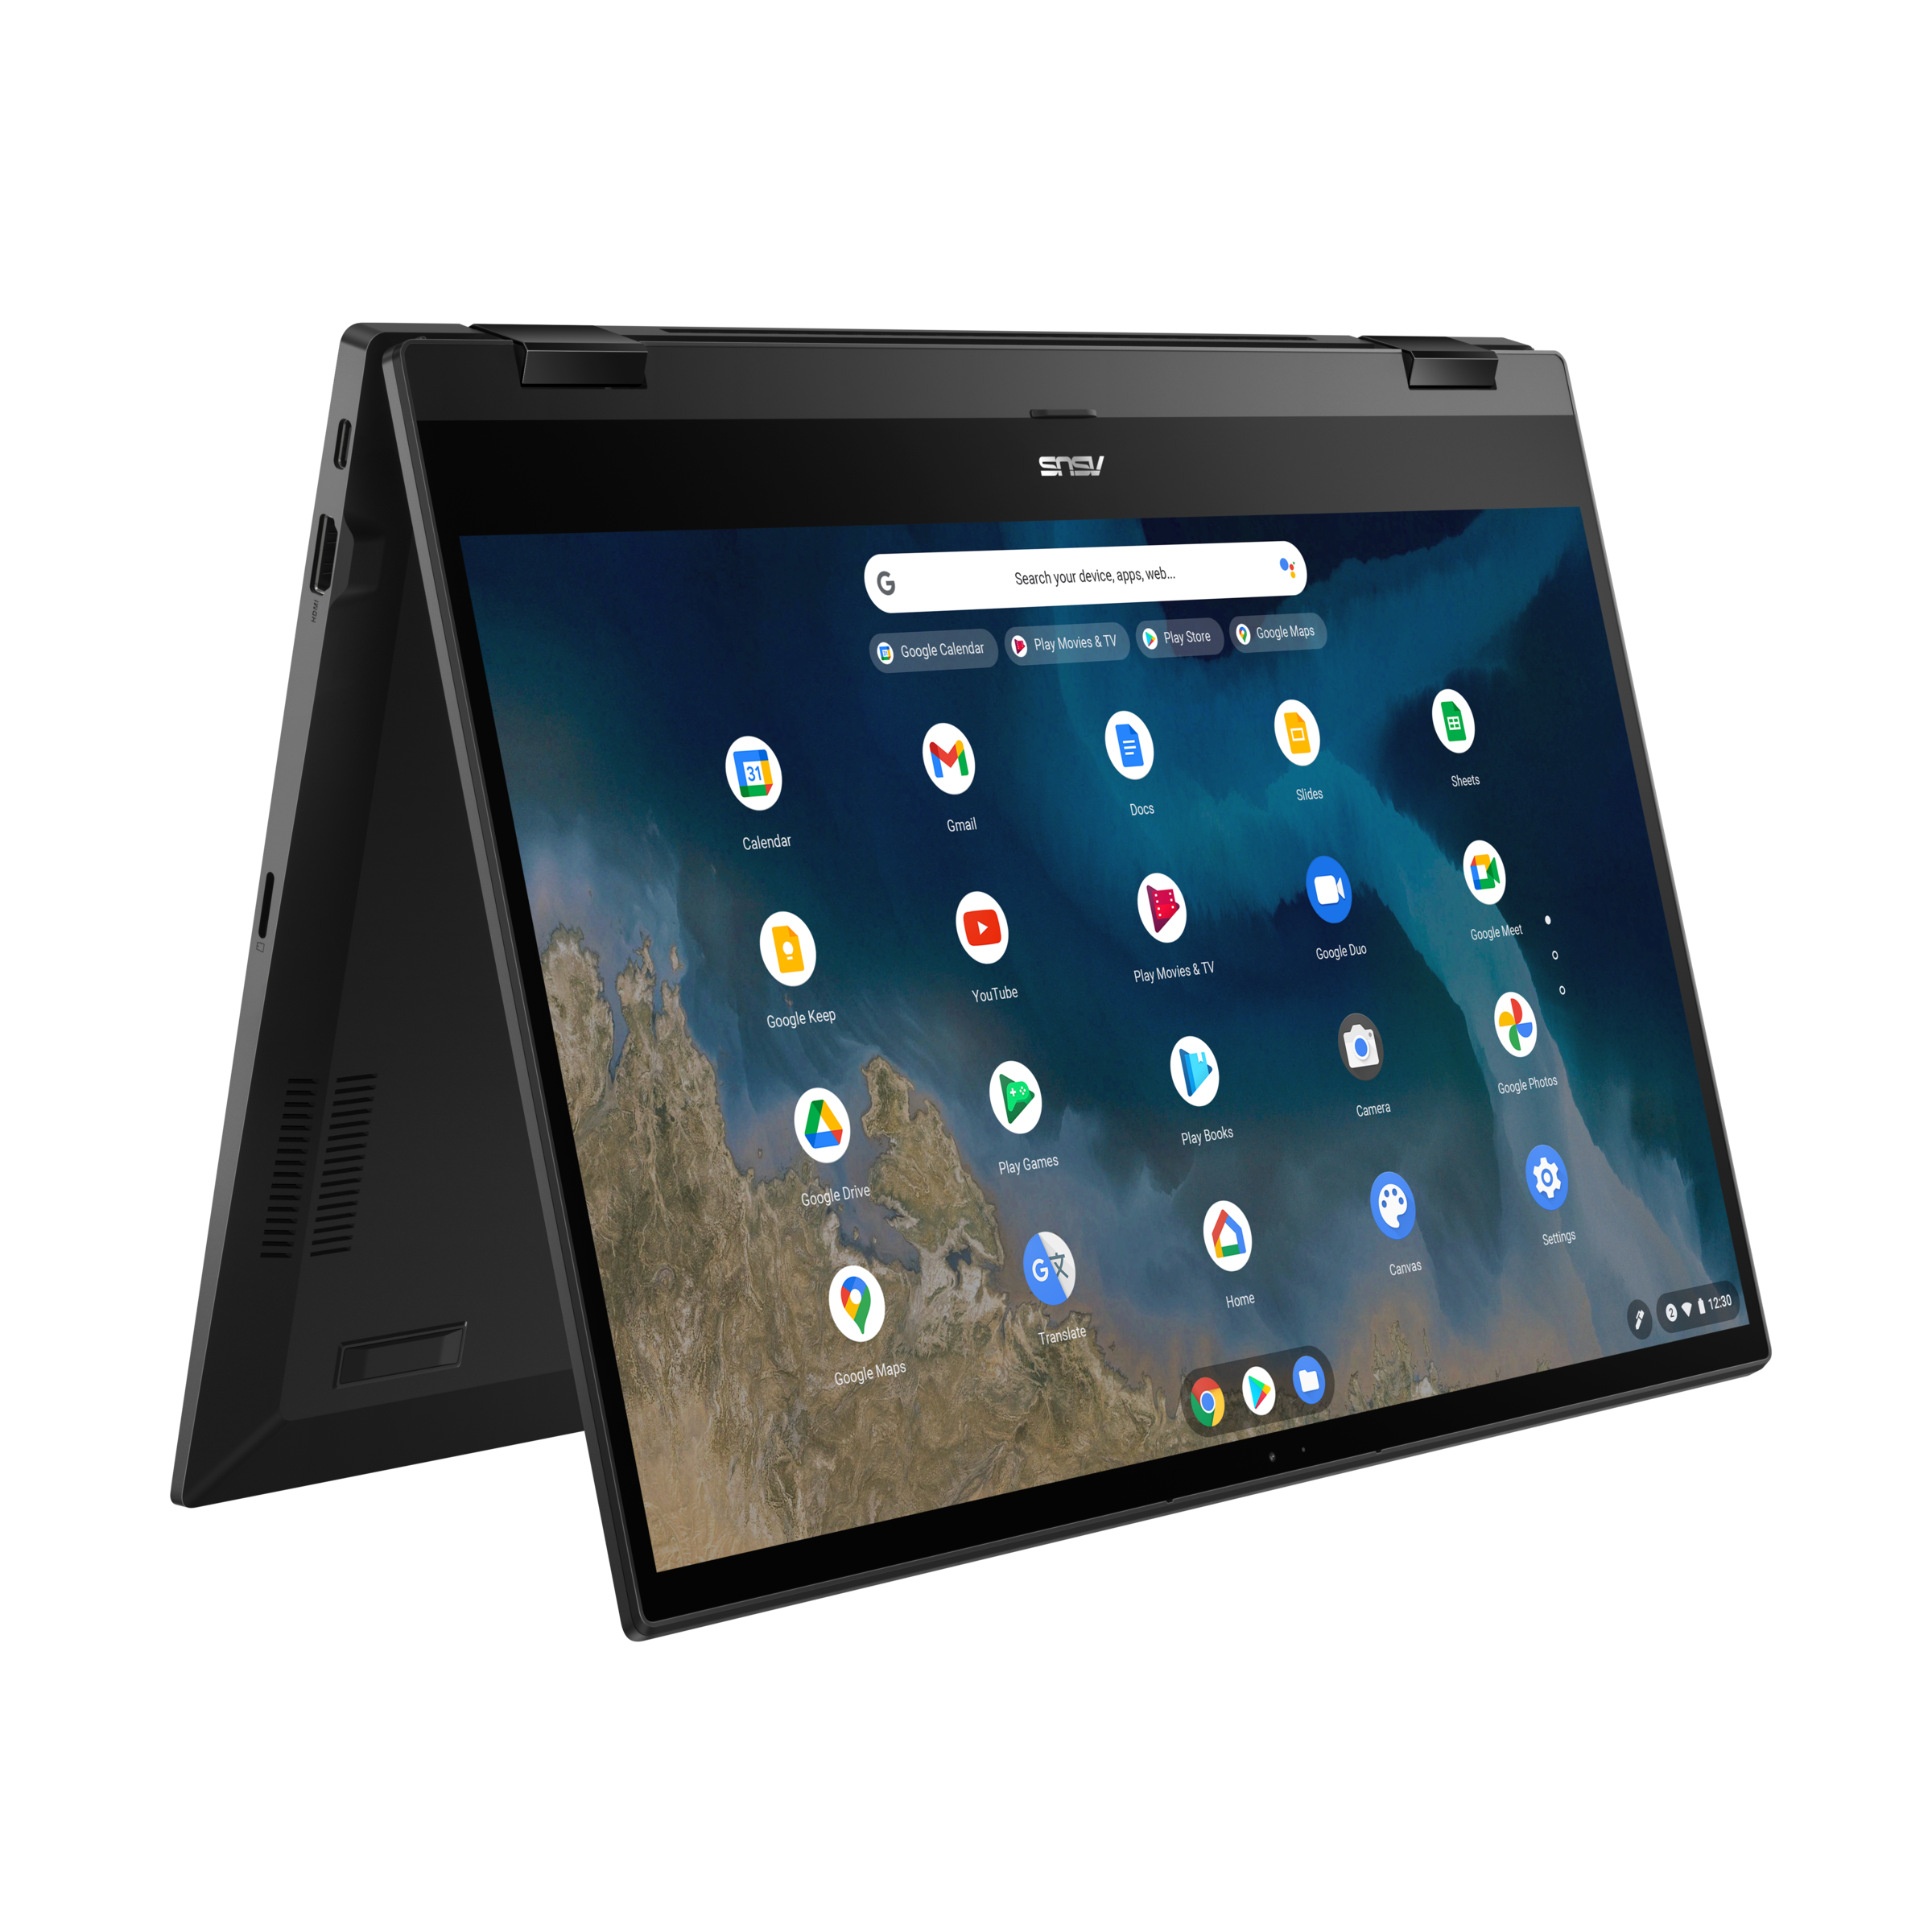 ASUS Chromebook Flip CM5 (CM5500)